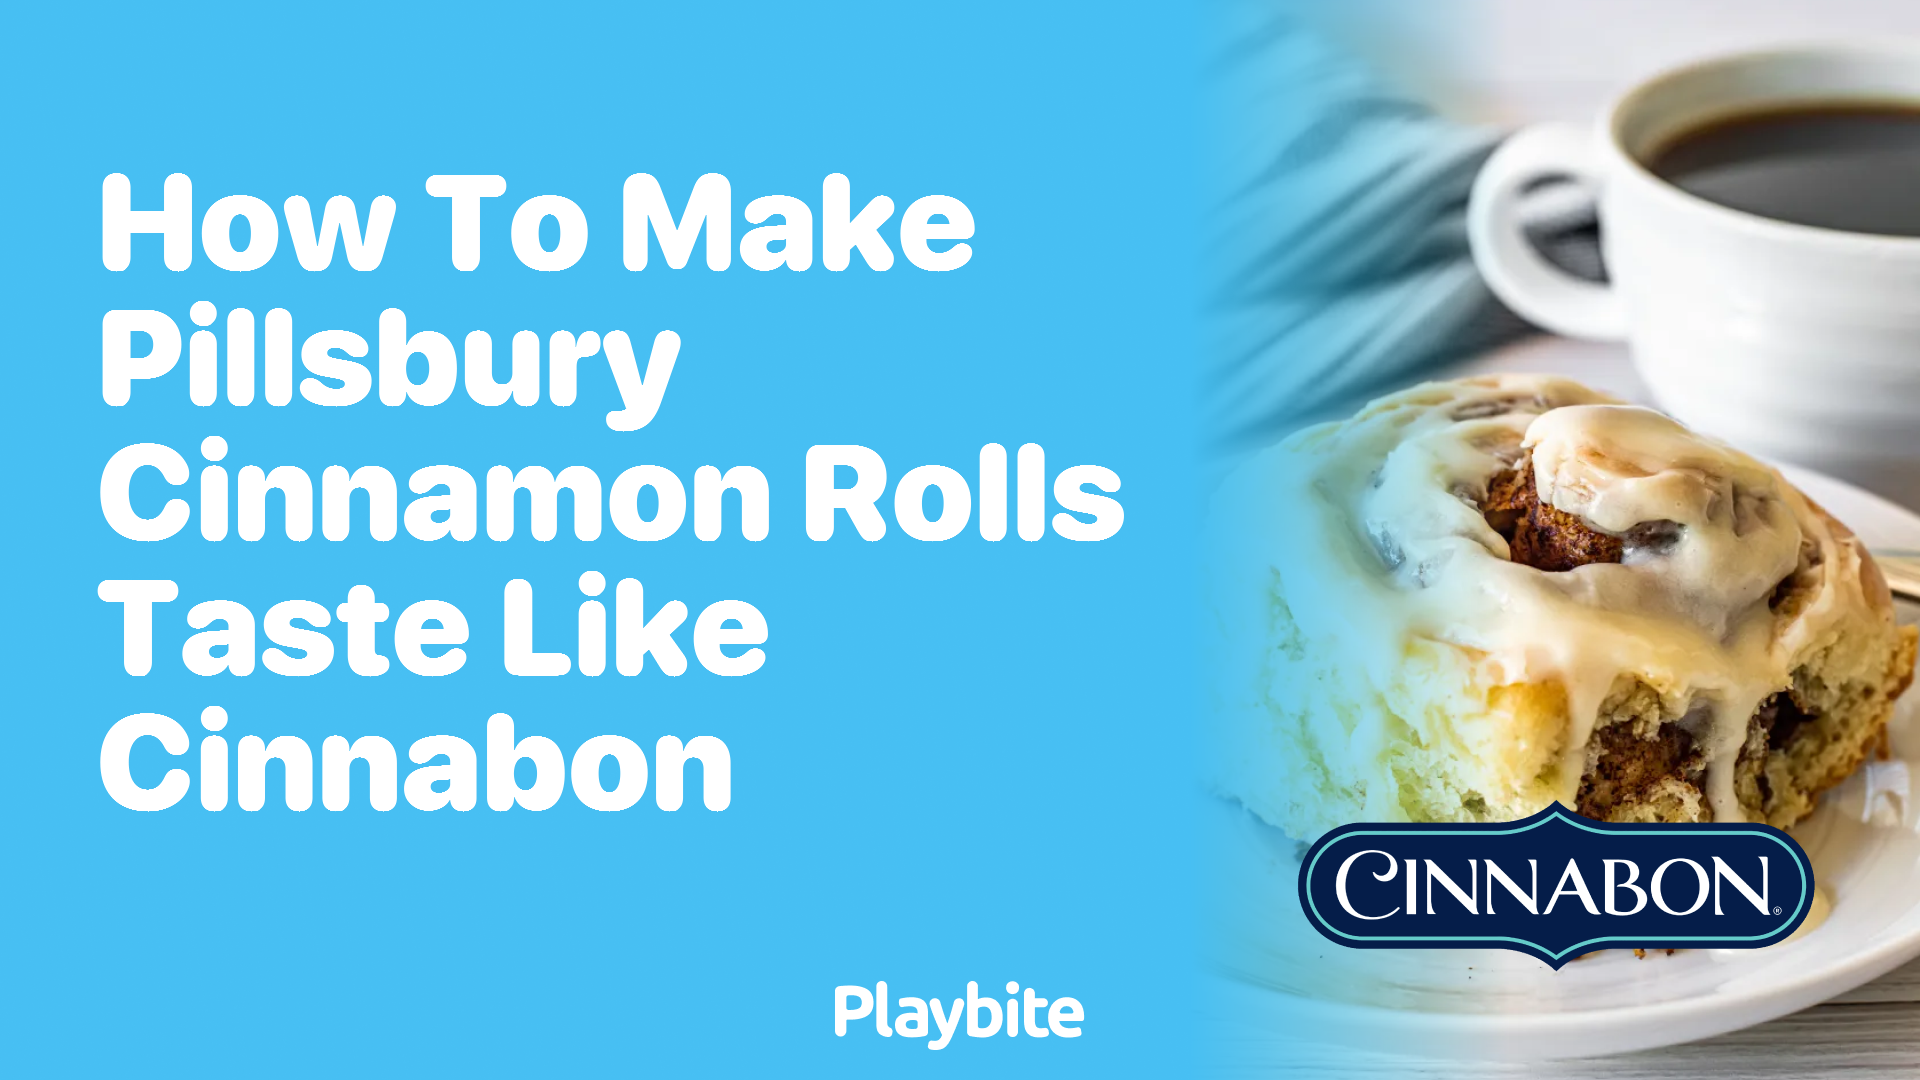 How to Make Pillsbury Cinnamon Rolls Taste Like Cinnabon